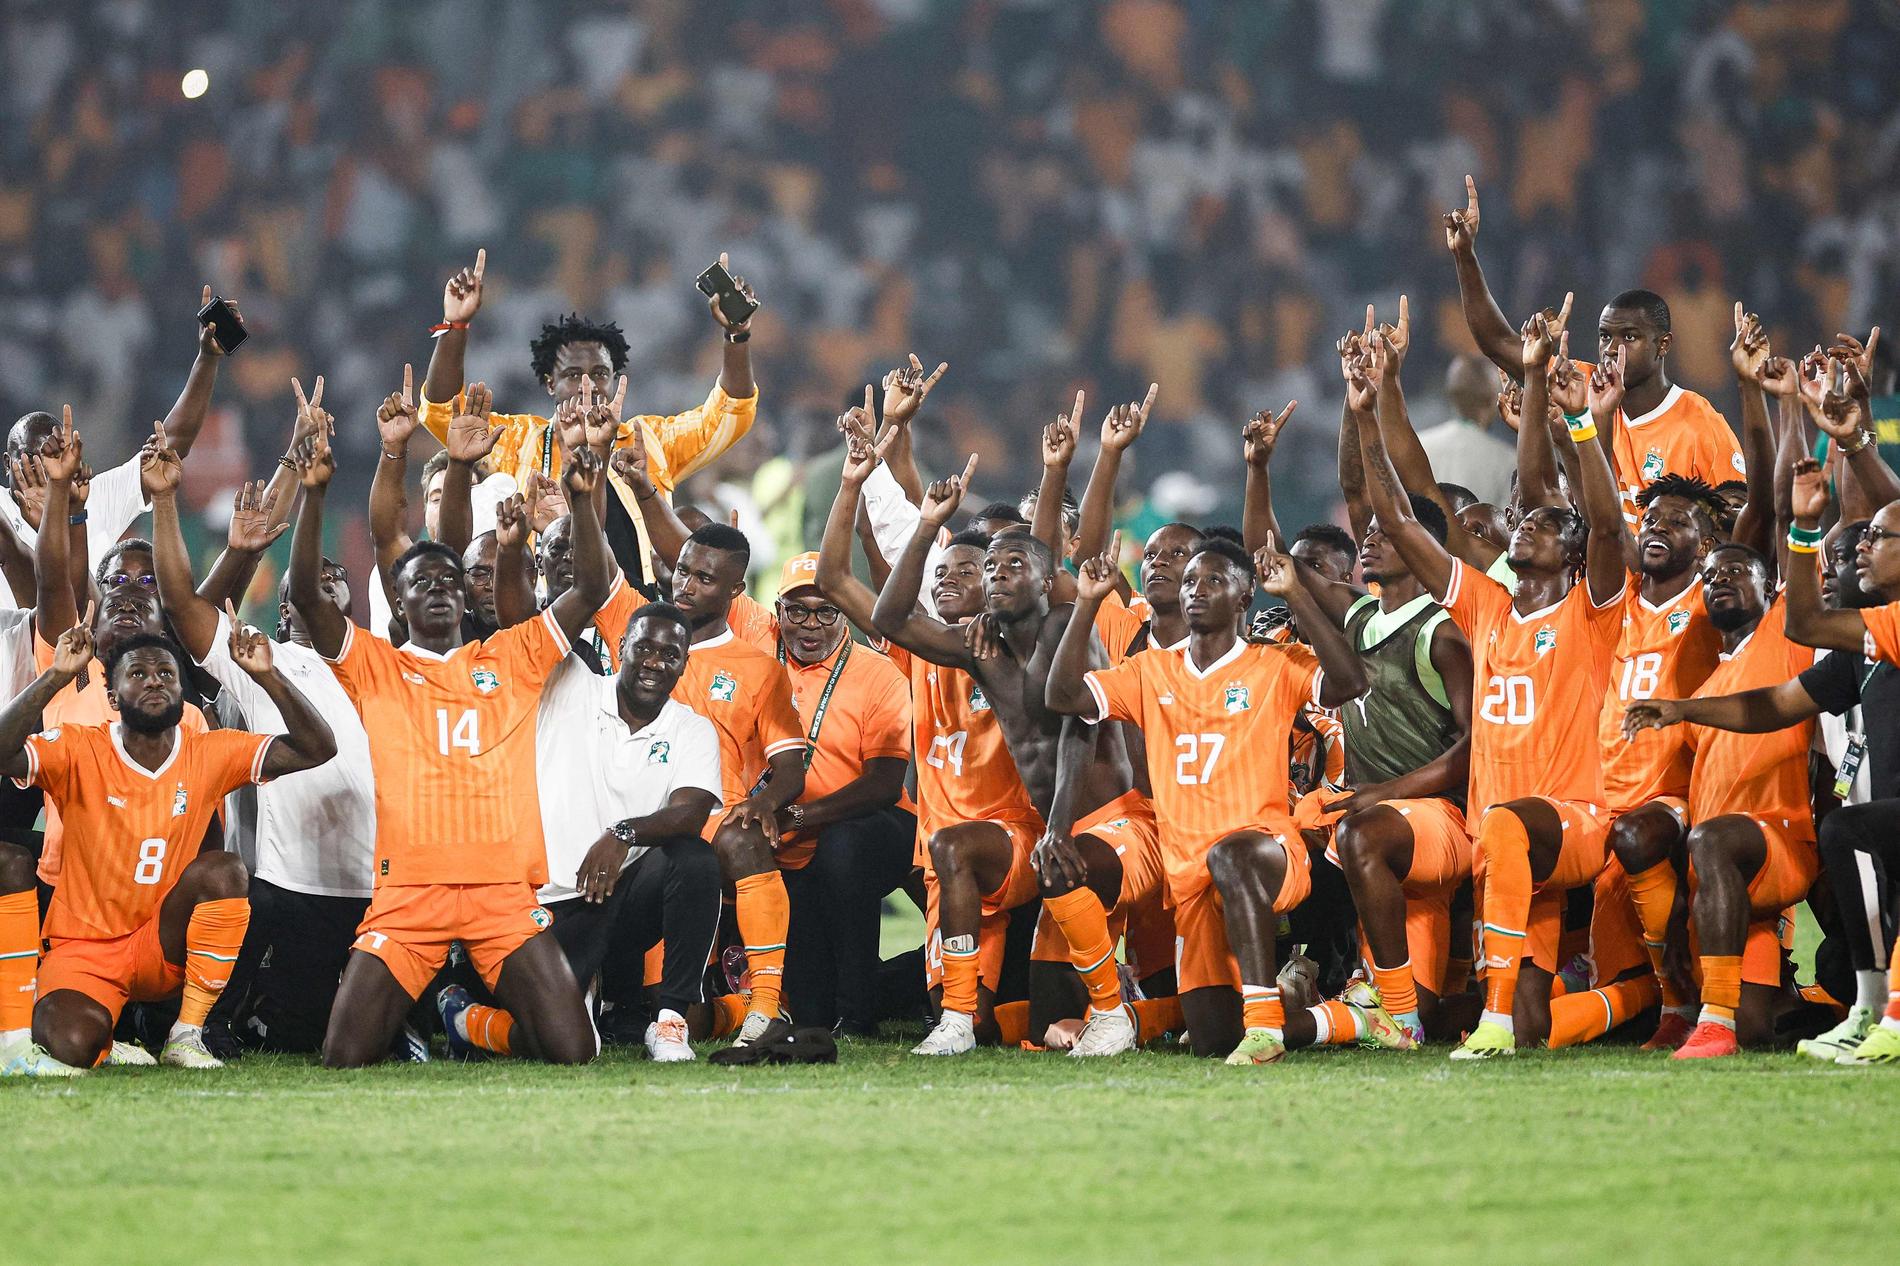 La Costa d'Avorio ha espulso l'allenatore e poi ha eliminato la favorita squadra senegalese.